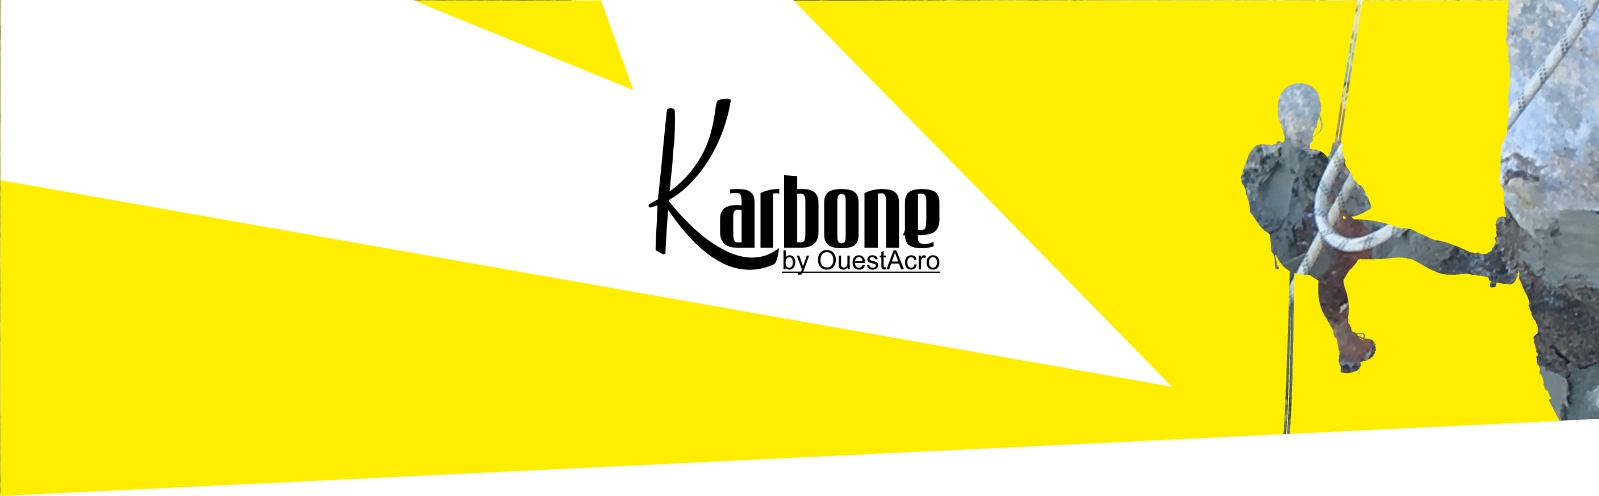 Bannière Karbone by Ouest acro